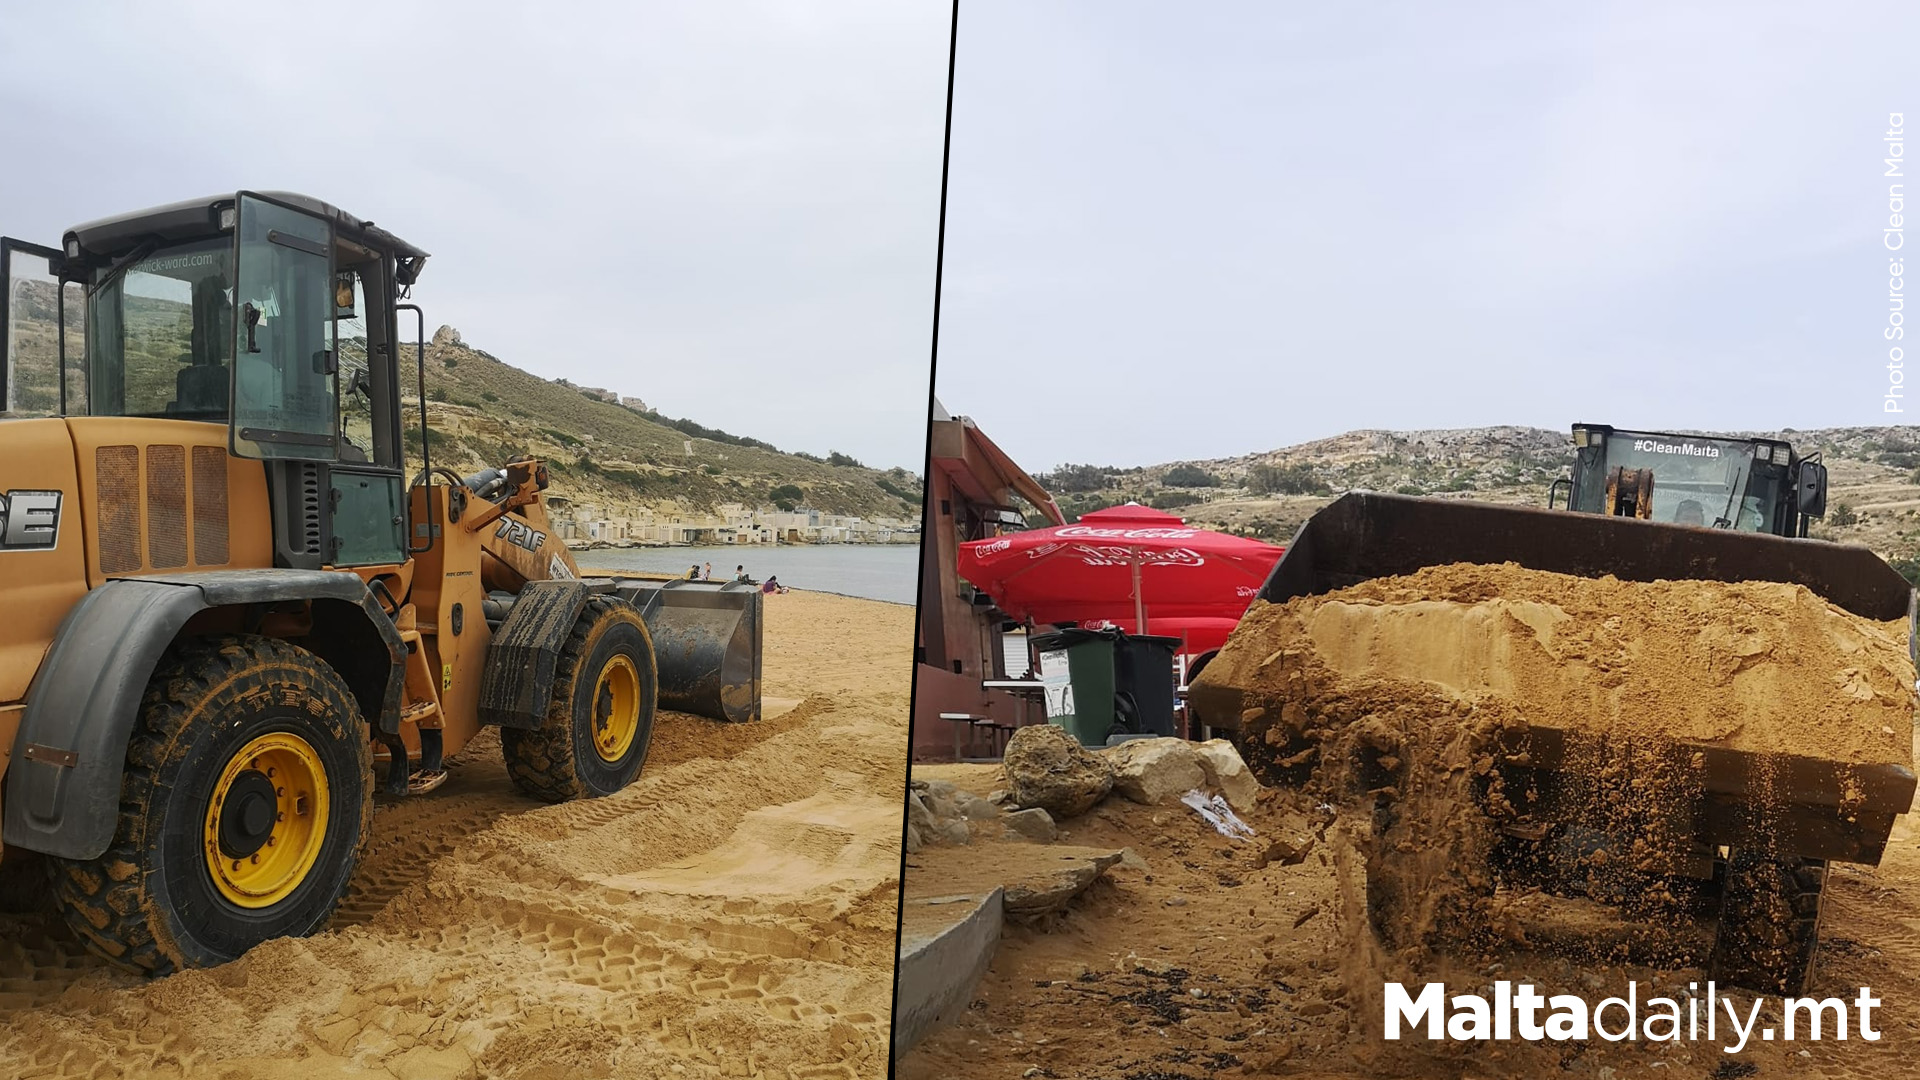 Clean Malta Preparing More Beaches For Summer